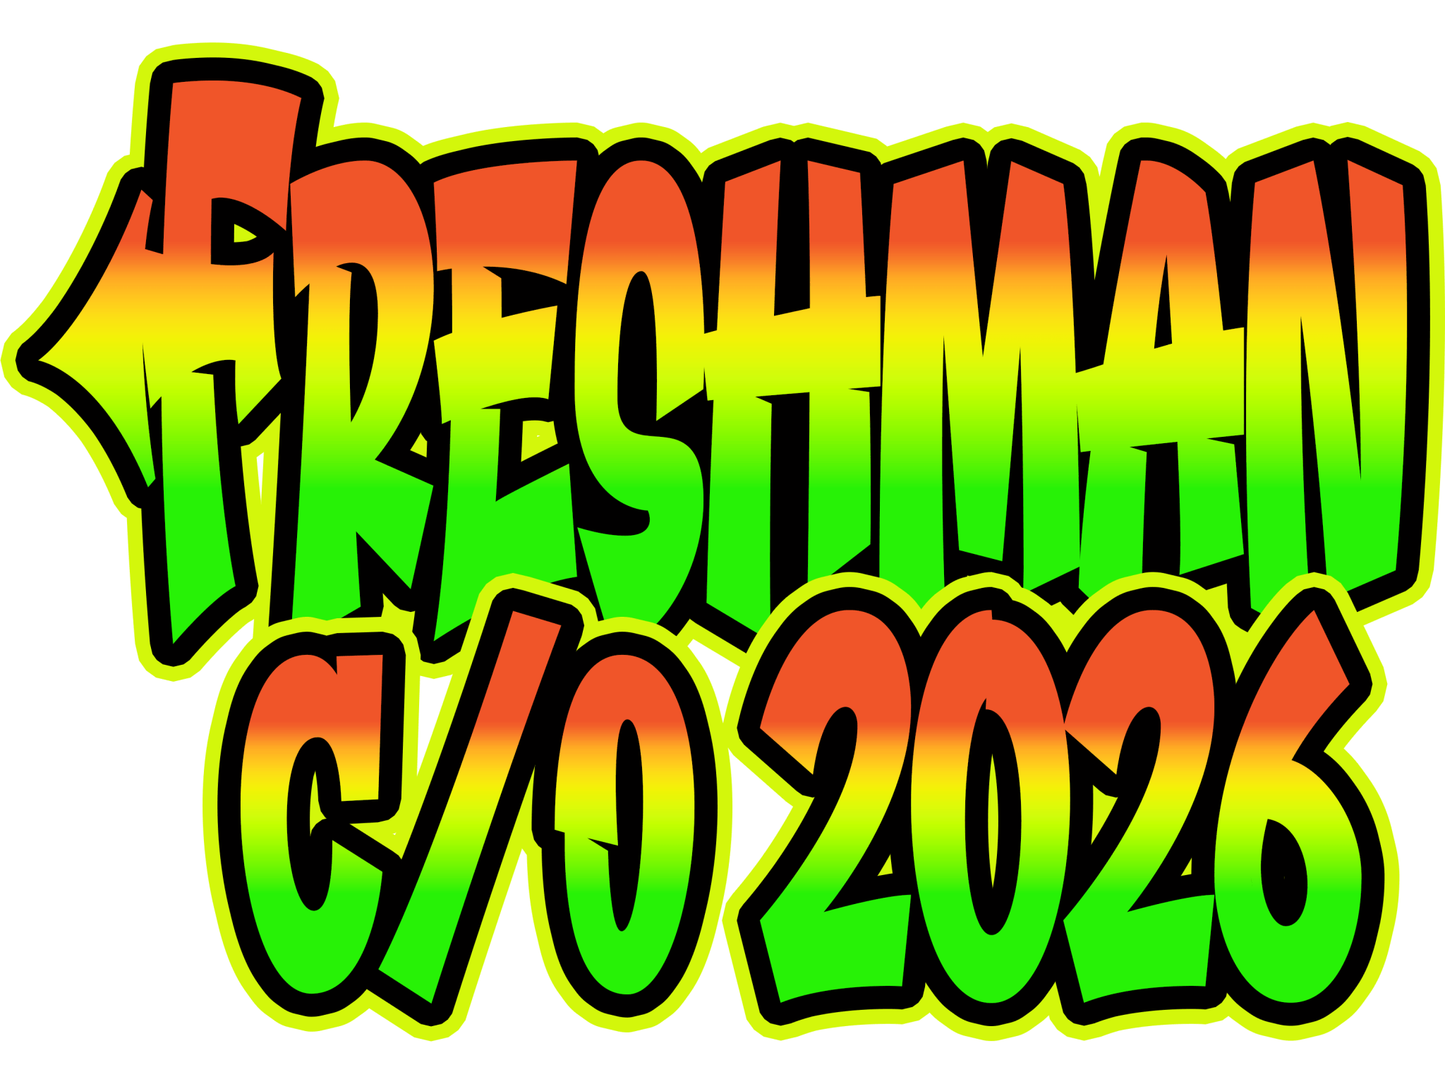 Freshman Class of 2026 T-shirts - smuniqueshirts